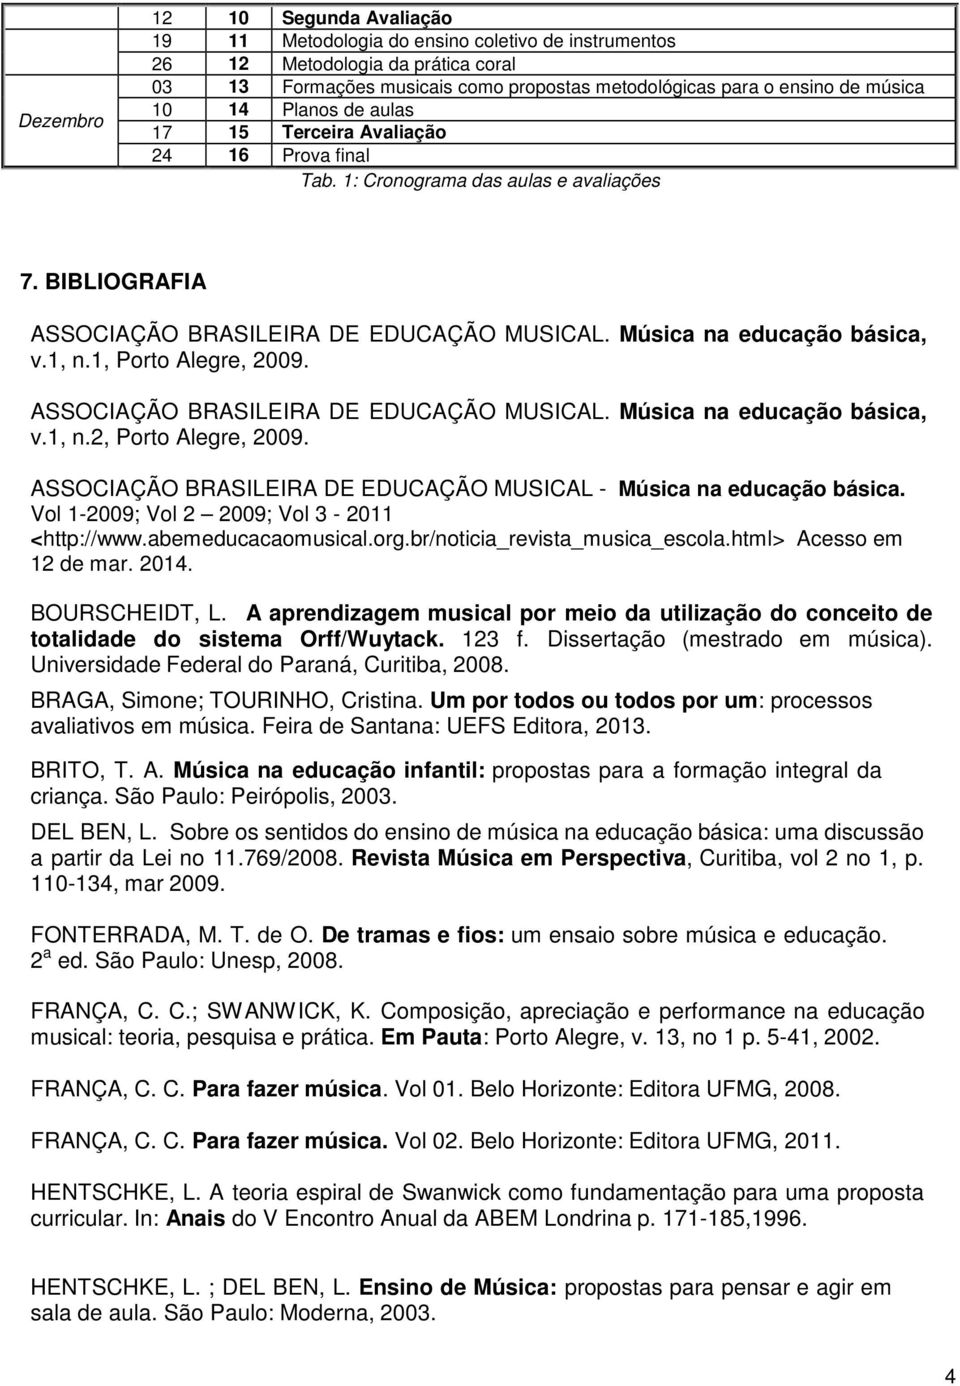 1, Porto Alegre, 2009. ASSOCIAÇÃO BRASILEIRA DE EDUCAÇÃO MUSICAL. Música na educação básica, v.1, n.2, Porto Alegre, 2009. ASSOCIAÇÃO BRASILEIRA DE EDUCAÇÃO MUSICAL - Música na educação básica.